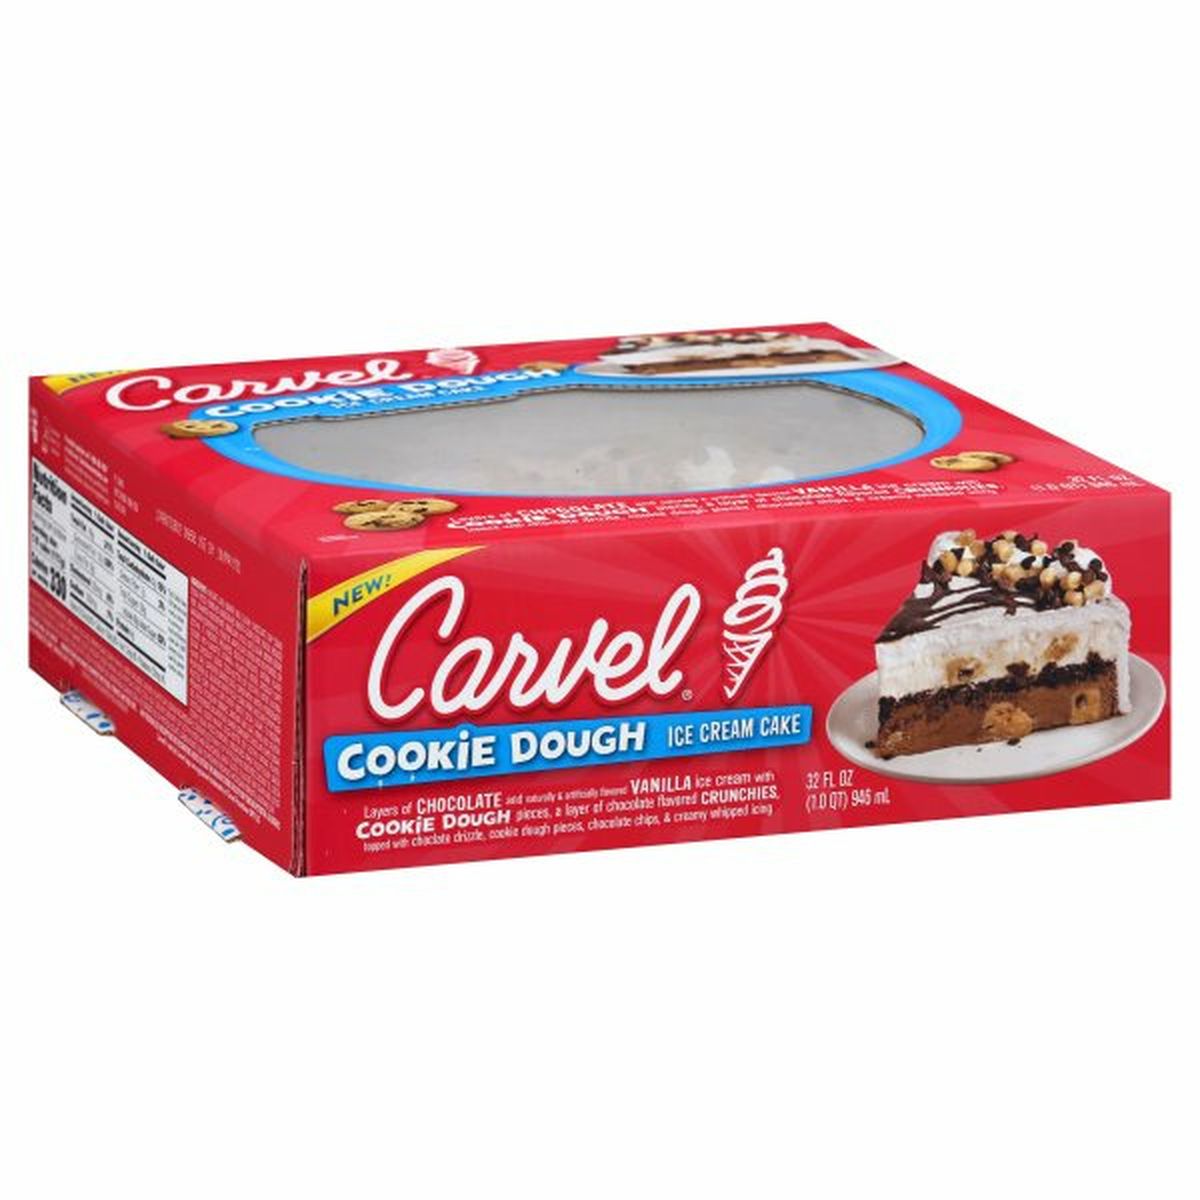 Calories in Carvel Ice Cream Cake, Cookie Dough